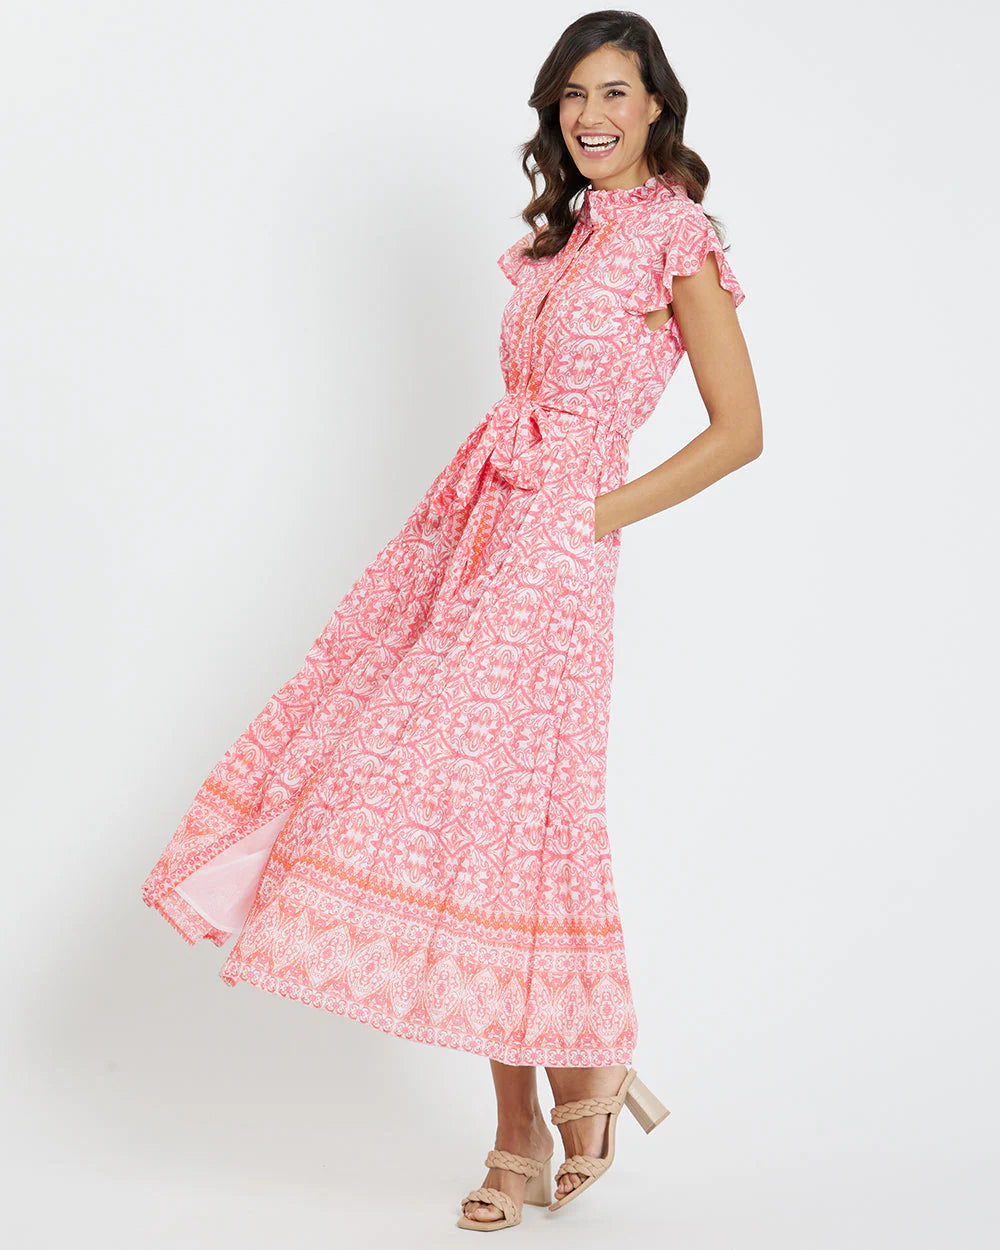 Jude Connally Mirabella Dress - Calico Garden Pink Apricot